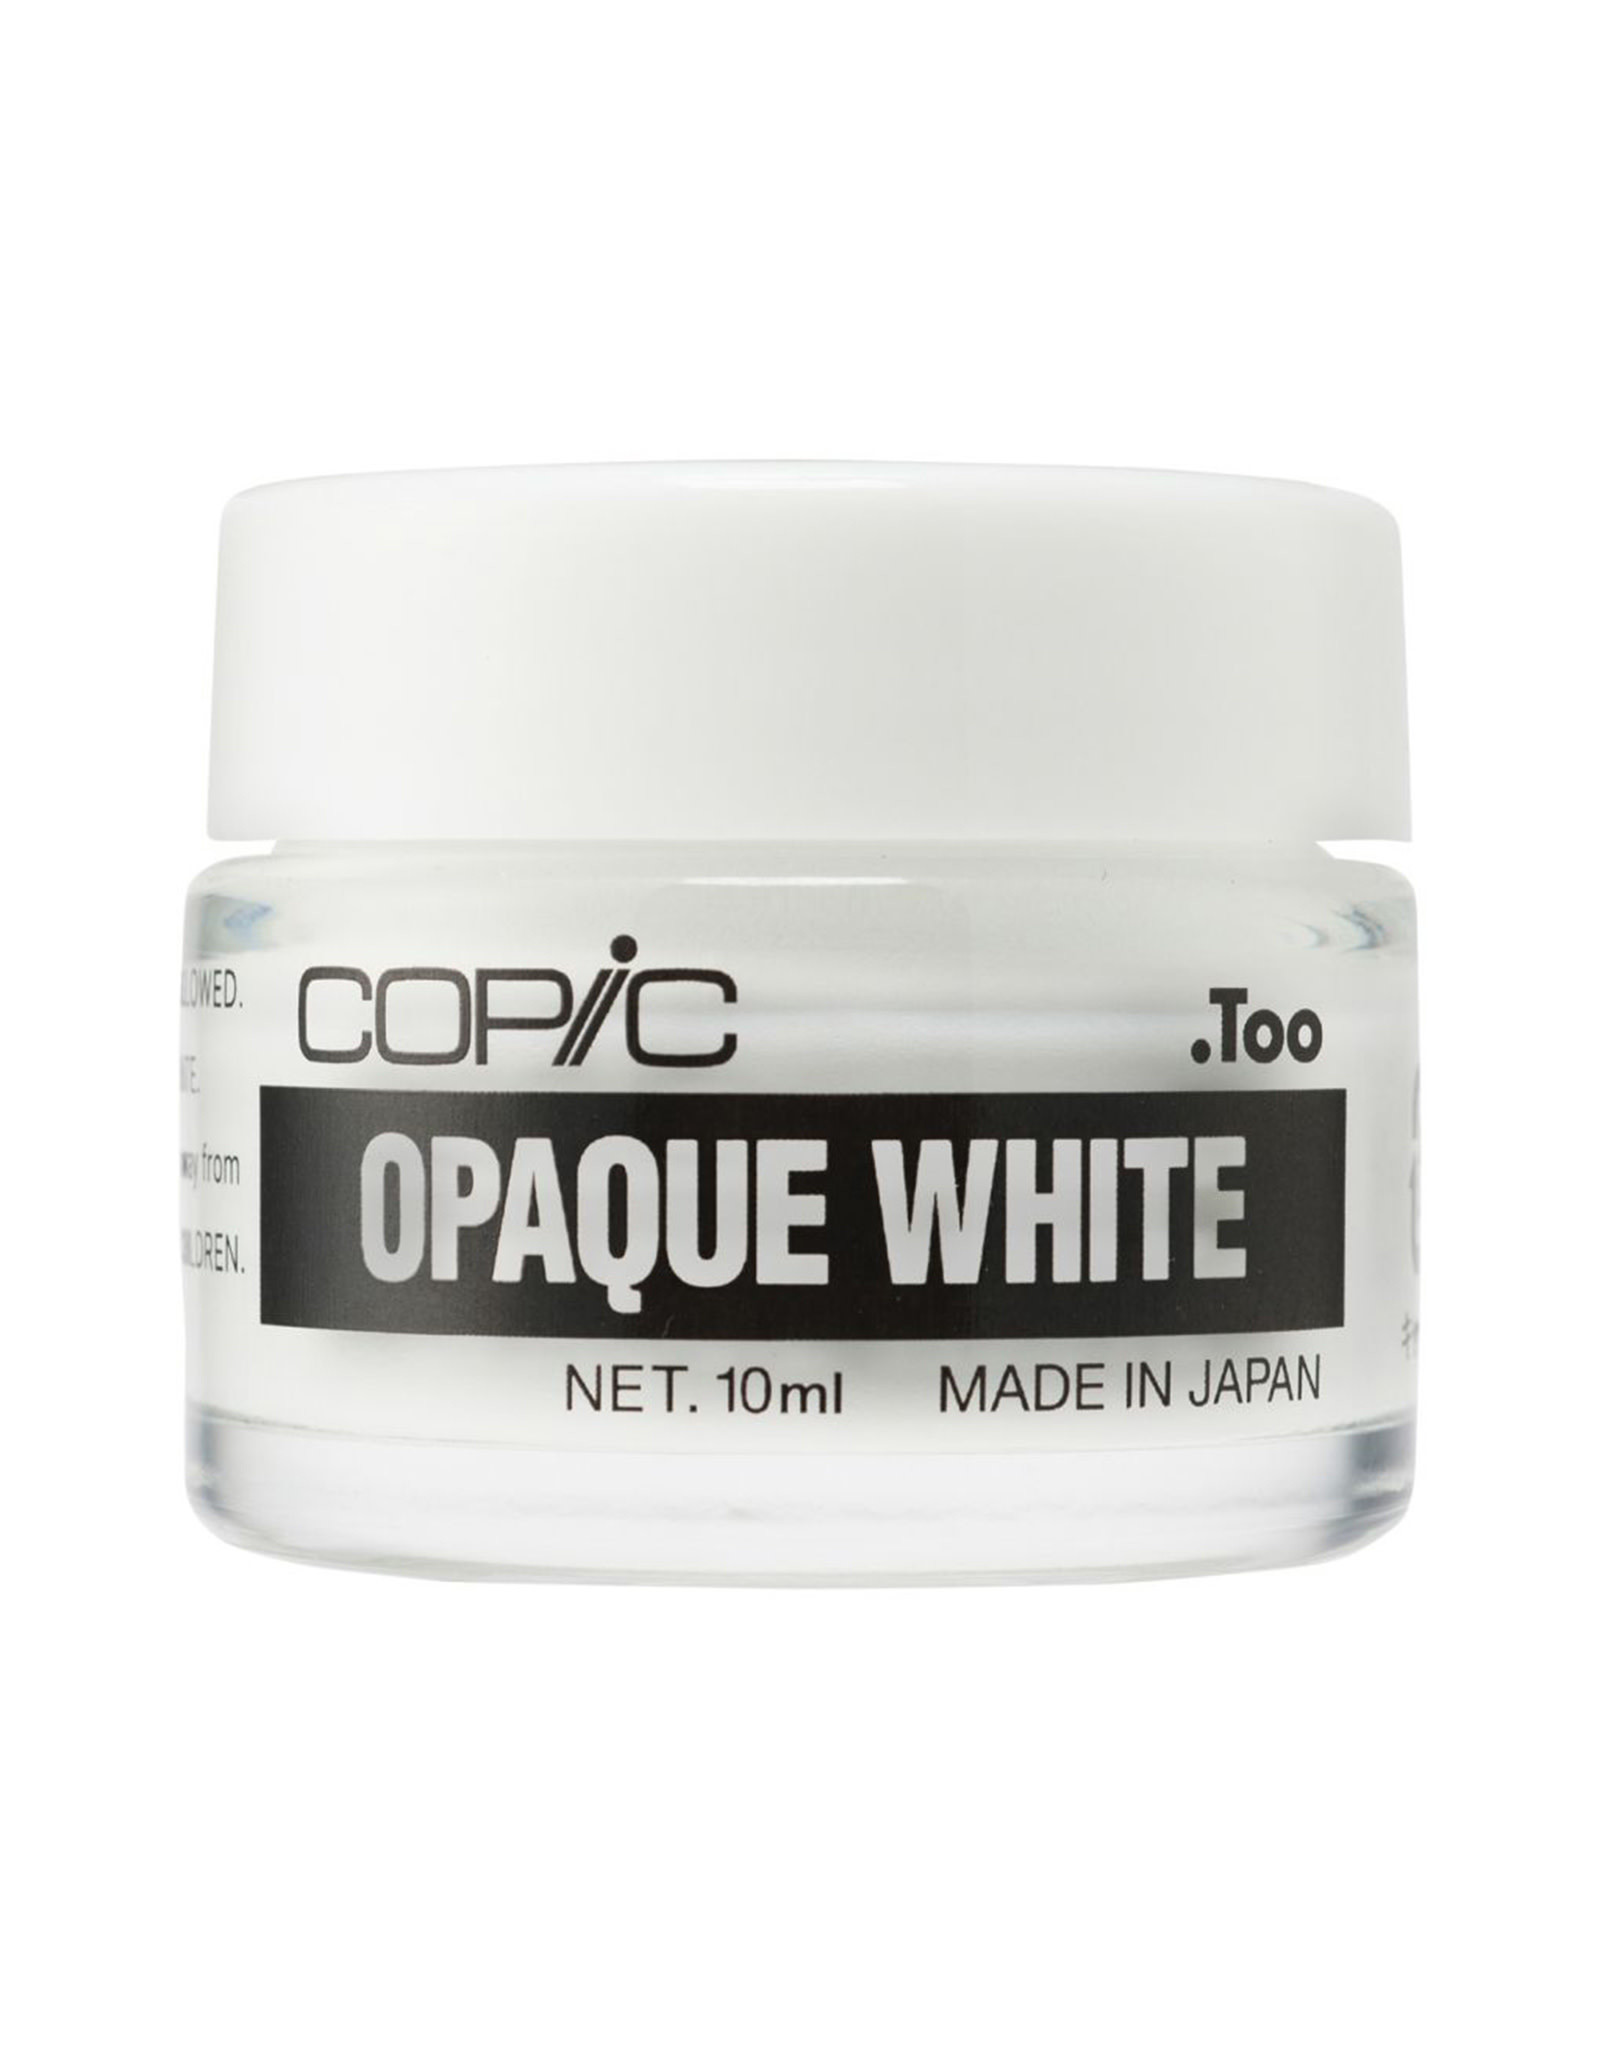 COPIC COPIC Opaque White, 1oz